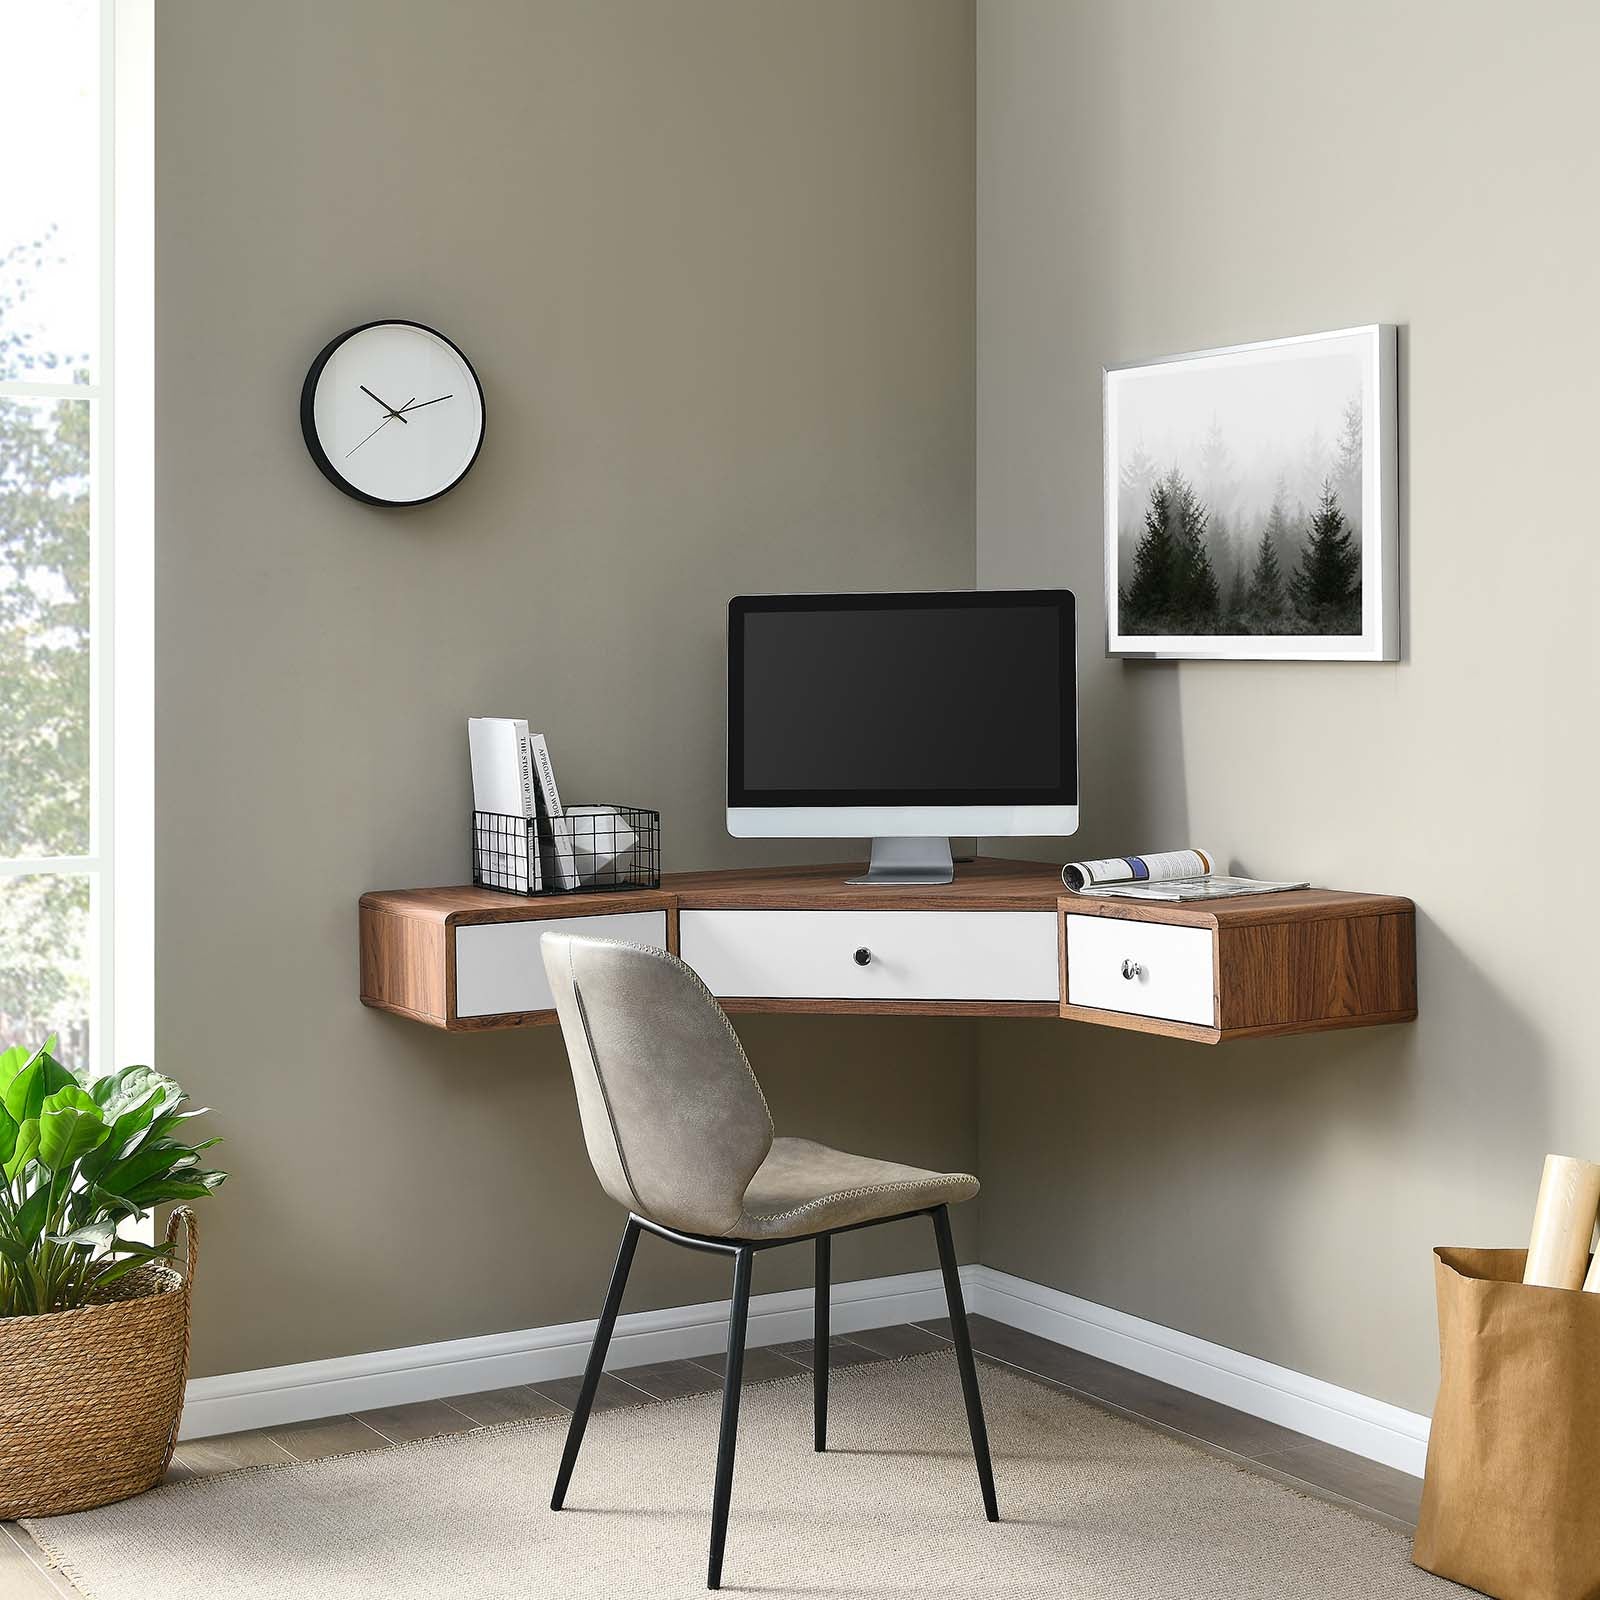 Transmit 47" Wall Mount Corner Walnut Office Desk - East Shore Modern Home Furnishings